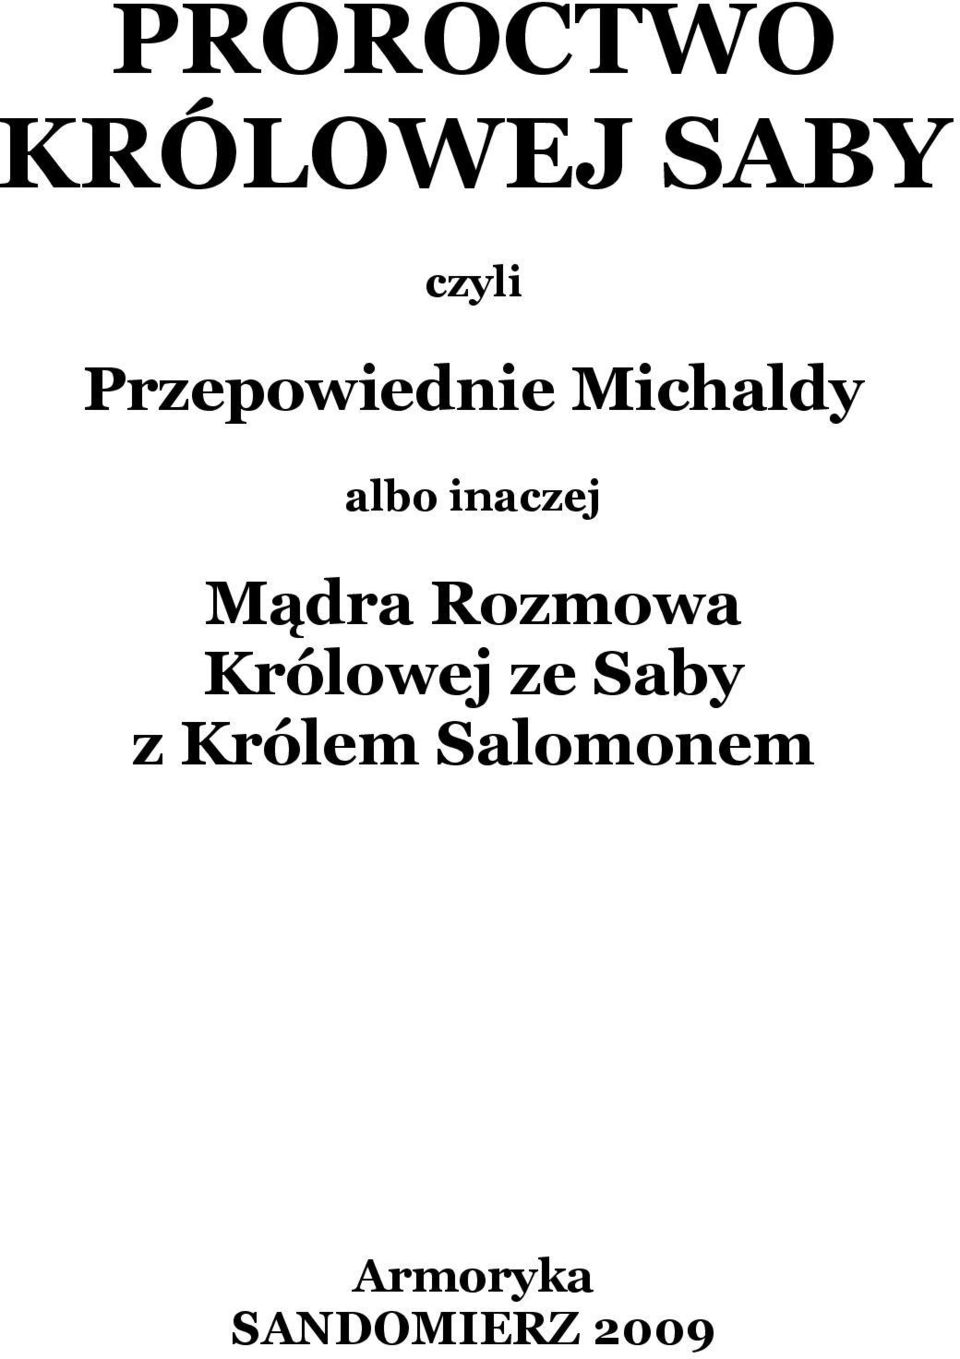 Proroctwo Królowej Saby - PDF Darmowe pobieranie